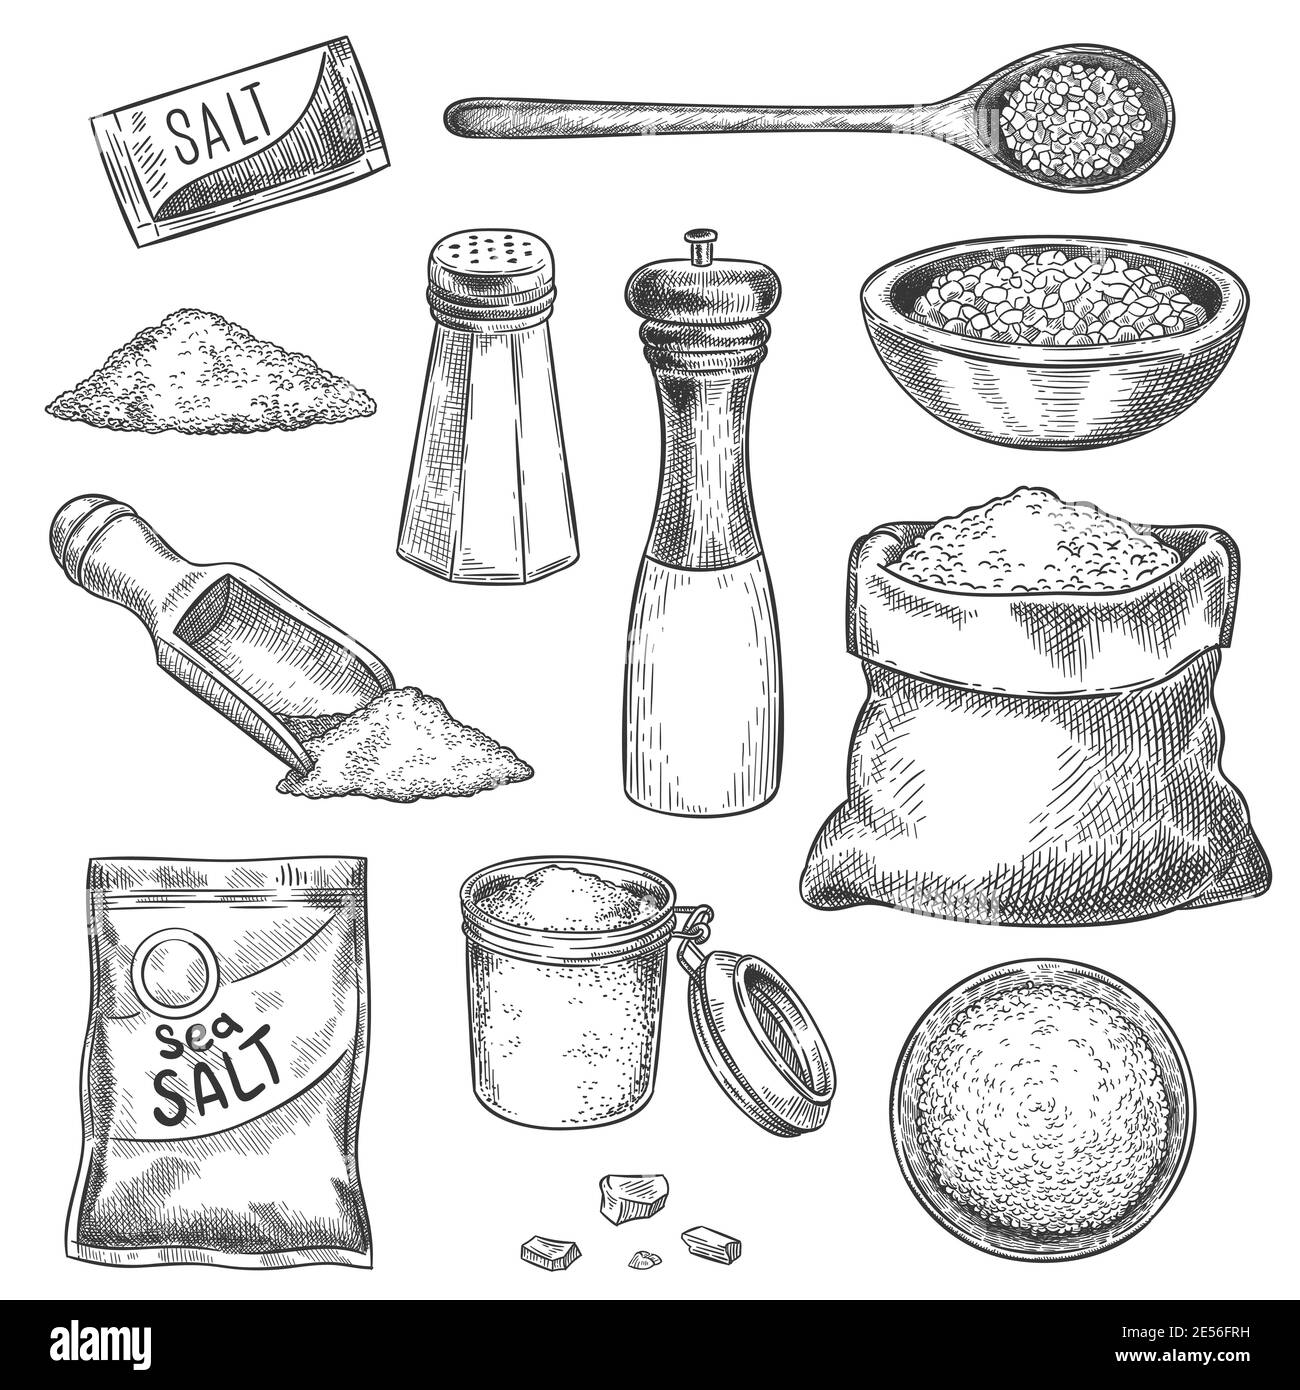 Meersalz. Sketch Vintage Handmühle mit Gewürzen und Gewürzen. Gravierte Glas, Löffel und Beutel mit Bio-Salzkristallen zum Kochen, Vektor-Set Stock Vektor